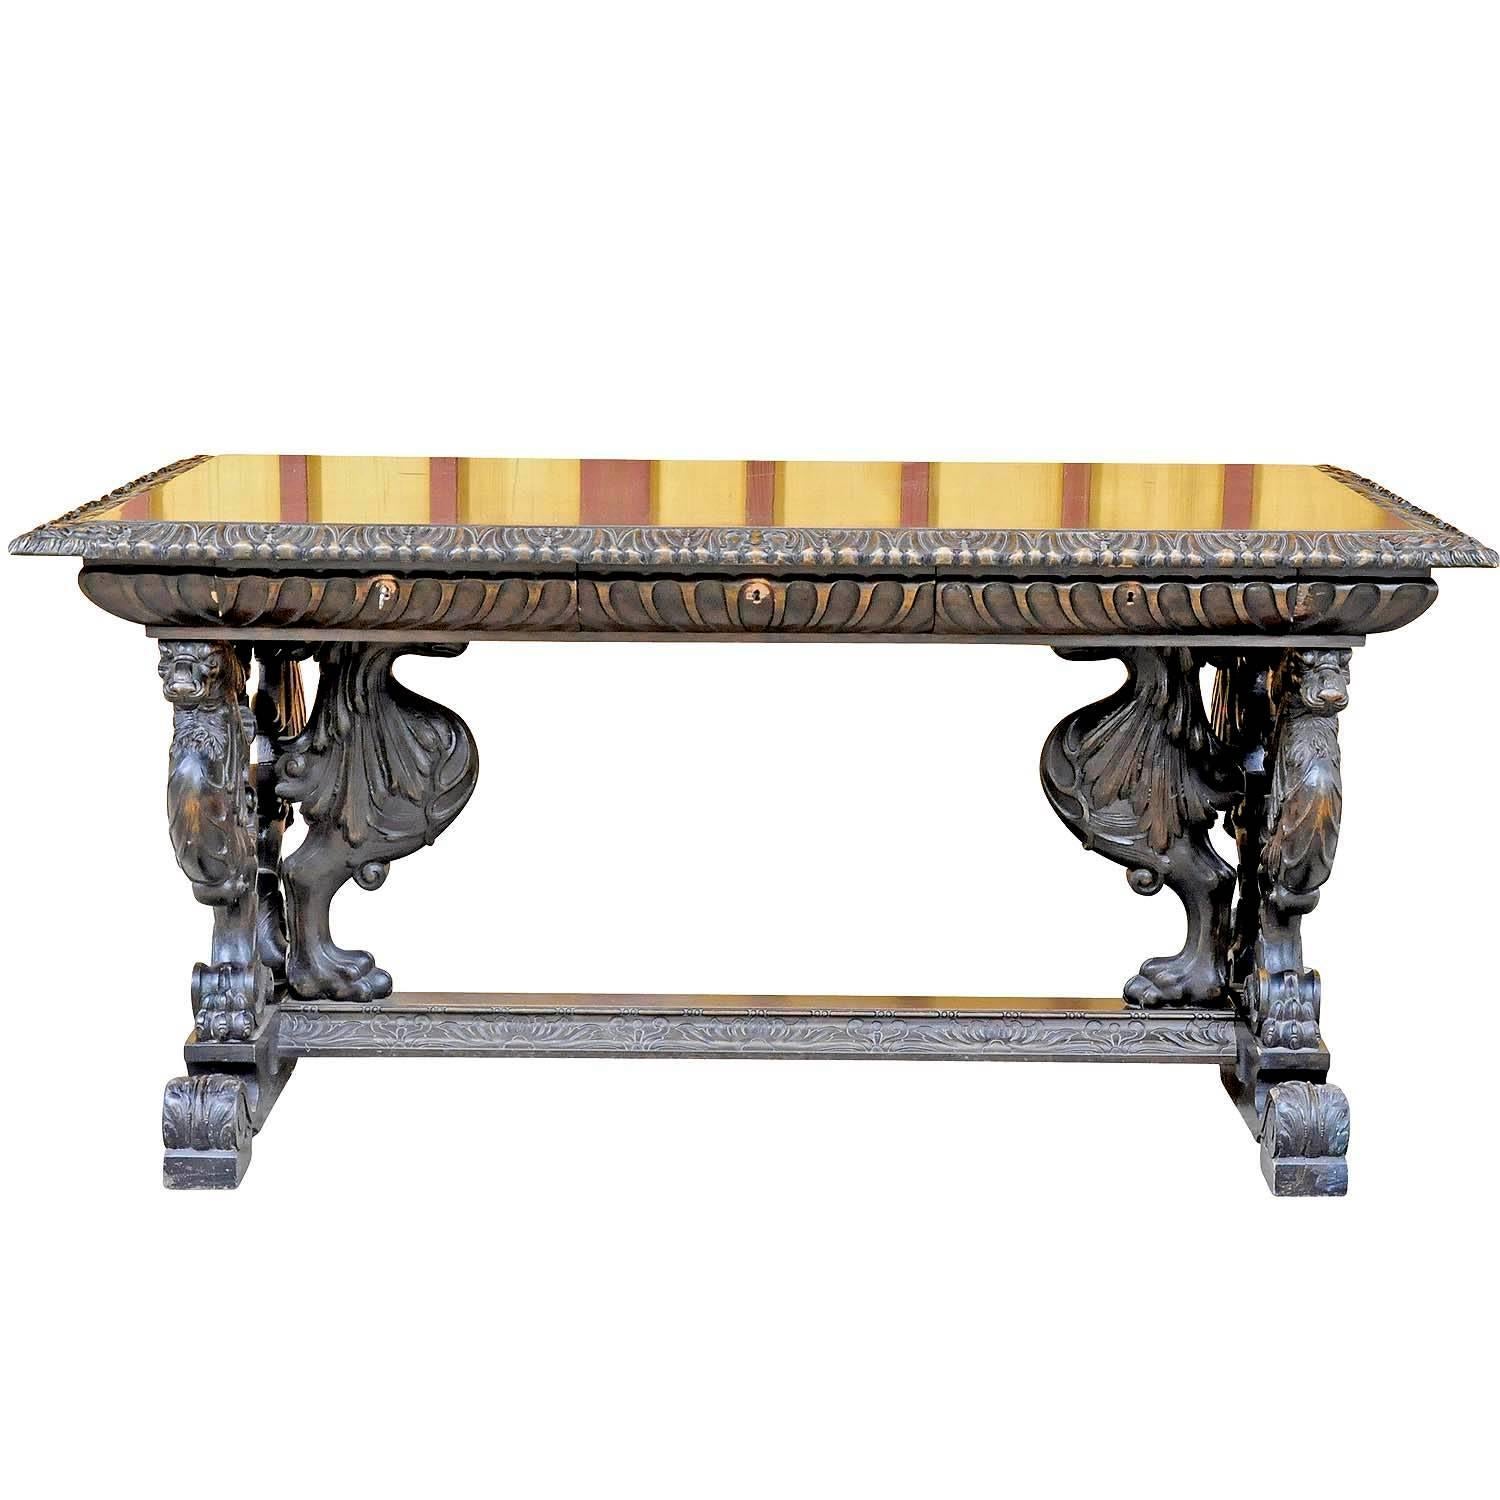 Renaissance Revival Great Renaissance Style Desk with Elaborate Carvings